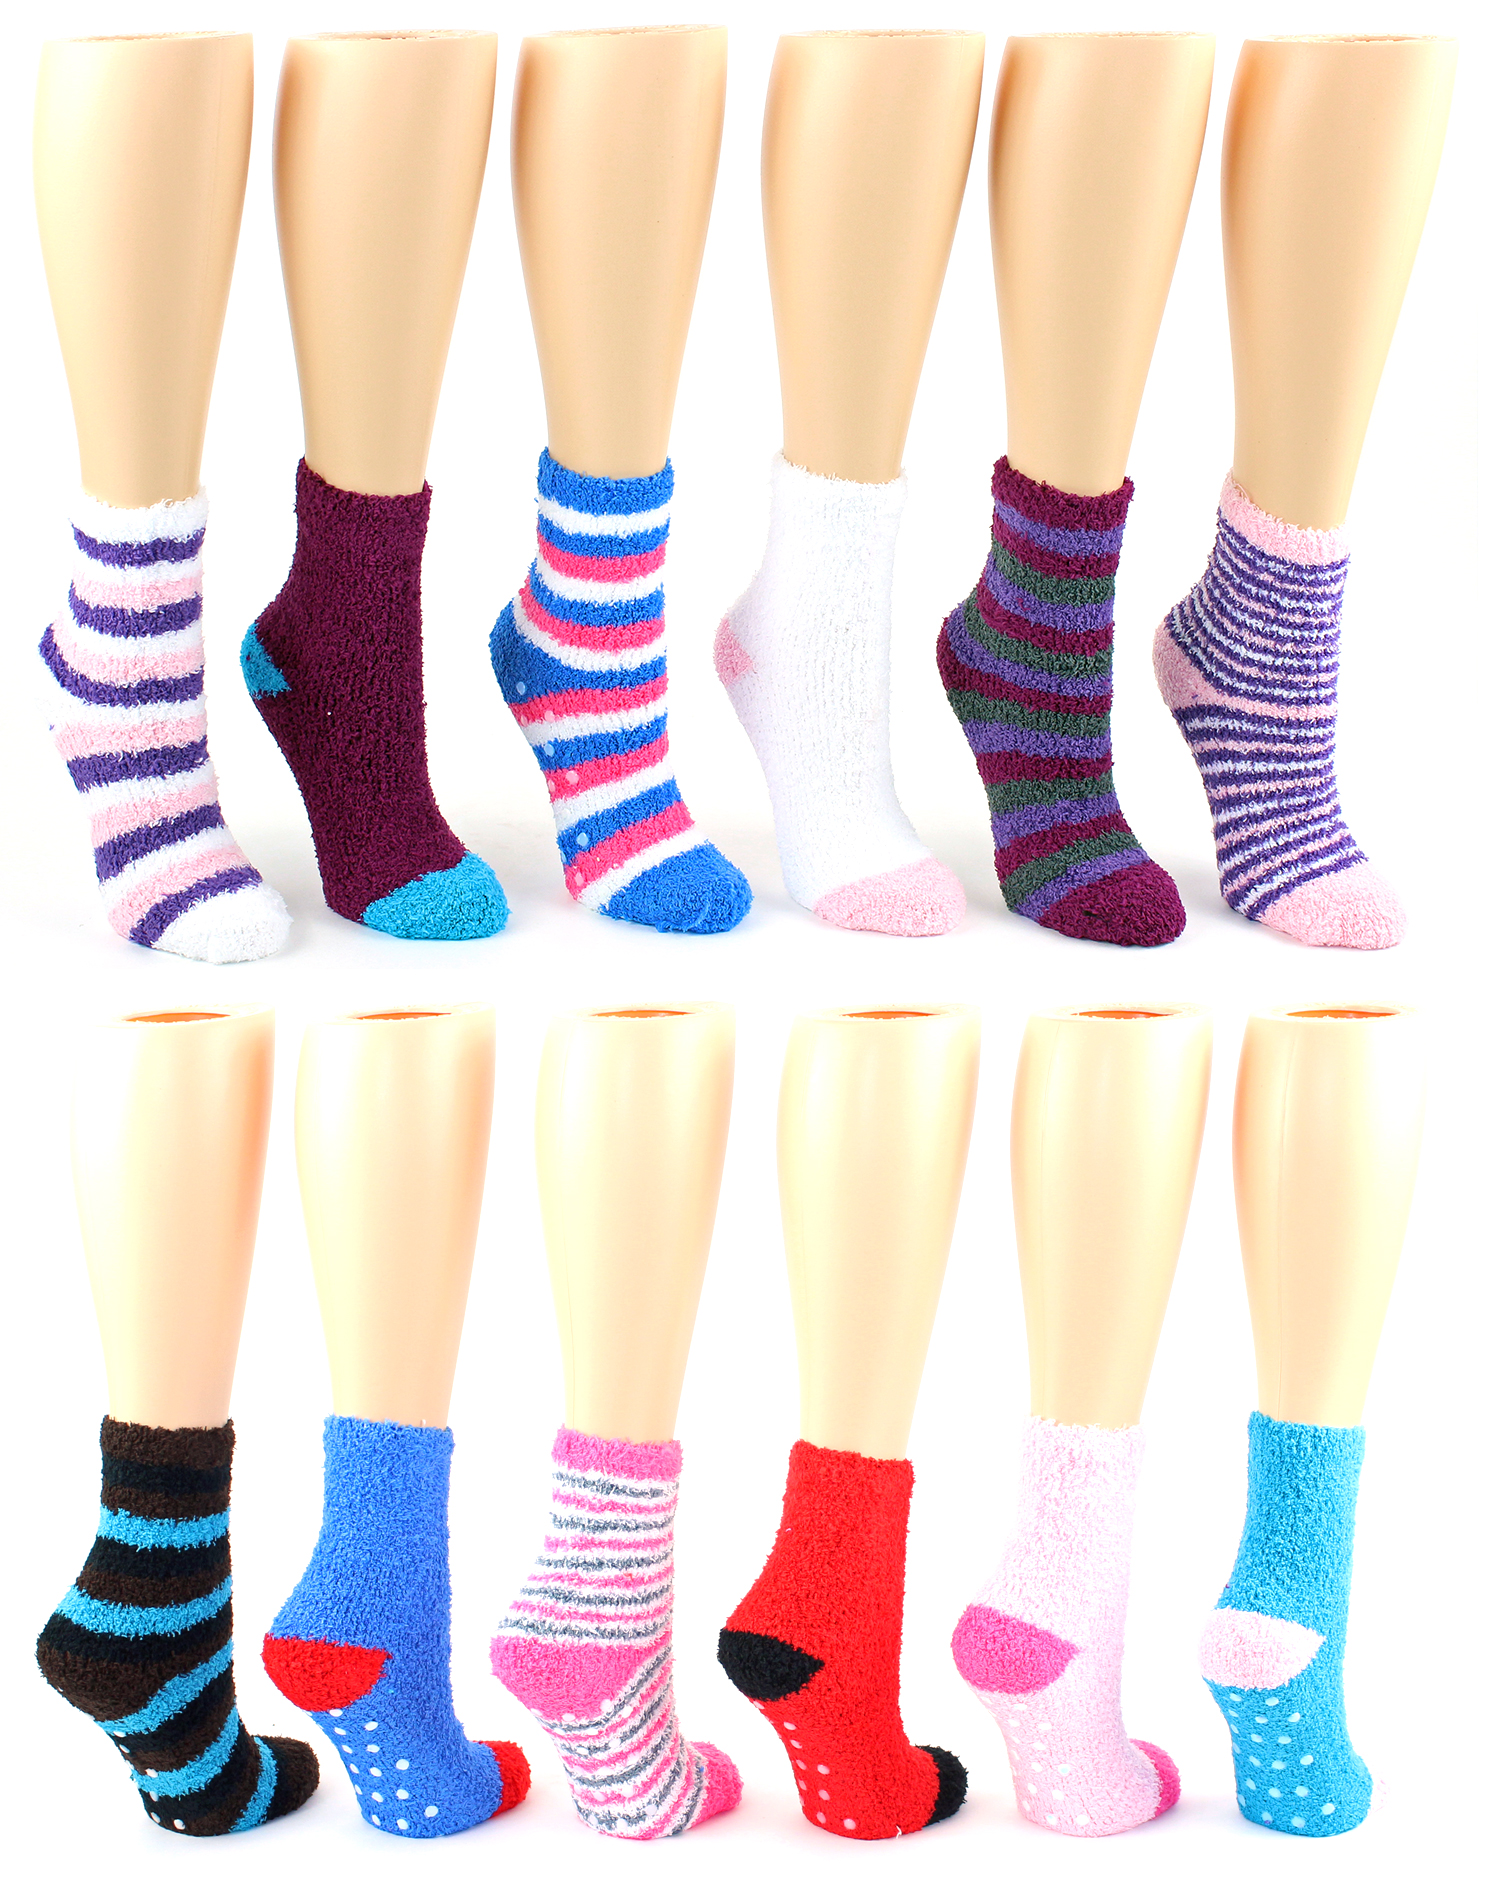 women's socks with grips